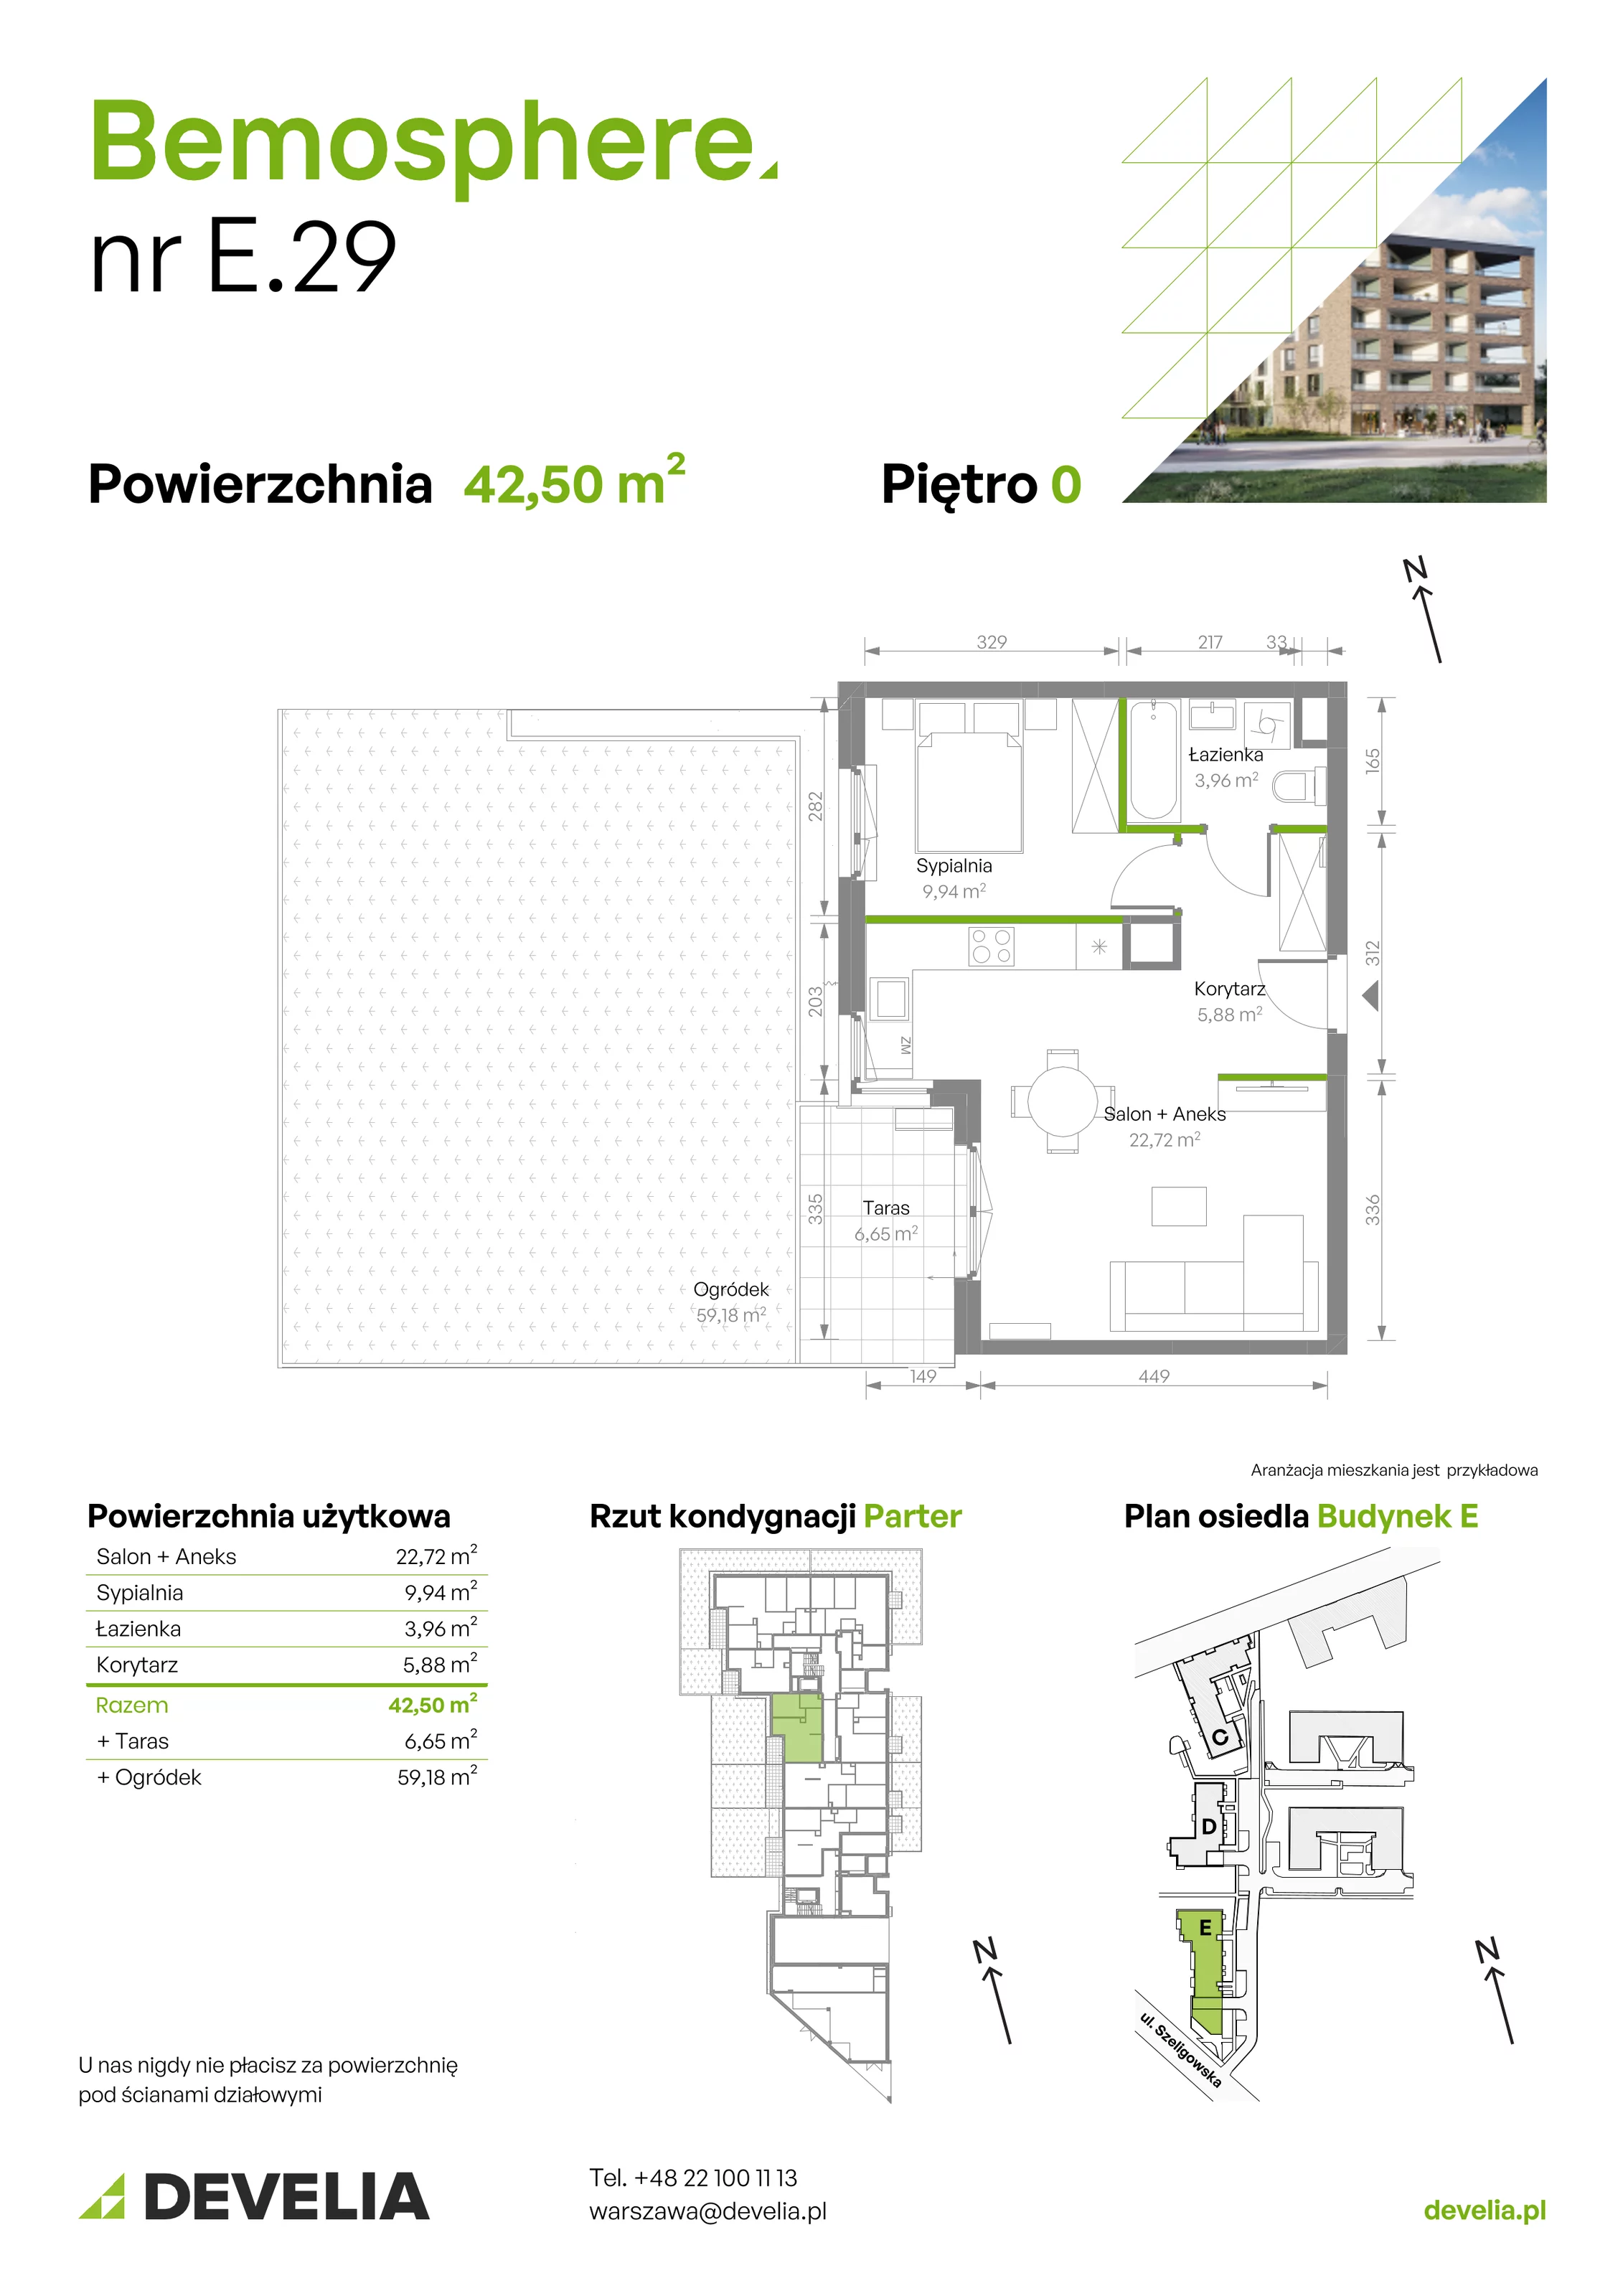 Mieszkanie 42,50 m², parter, oferta nr E/029, Bemosphere, Warszawa, Bemowo, Chrzanów, ul. Szeligowska 24